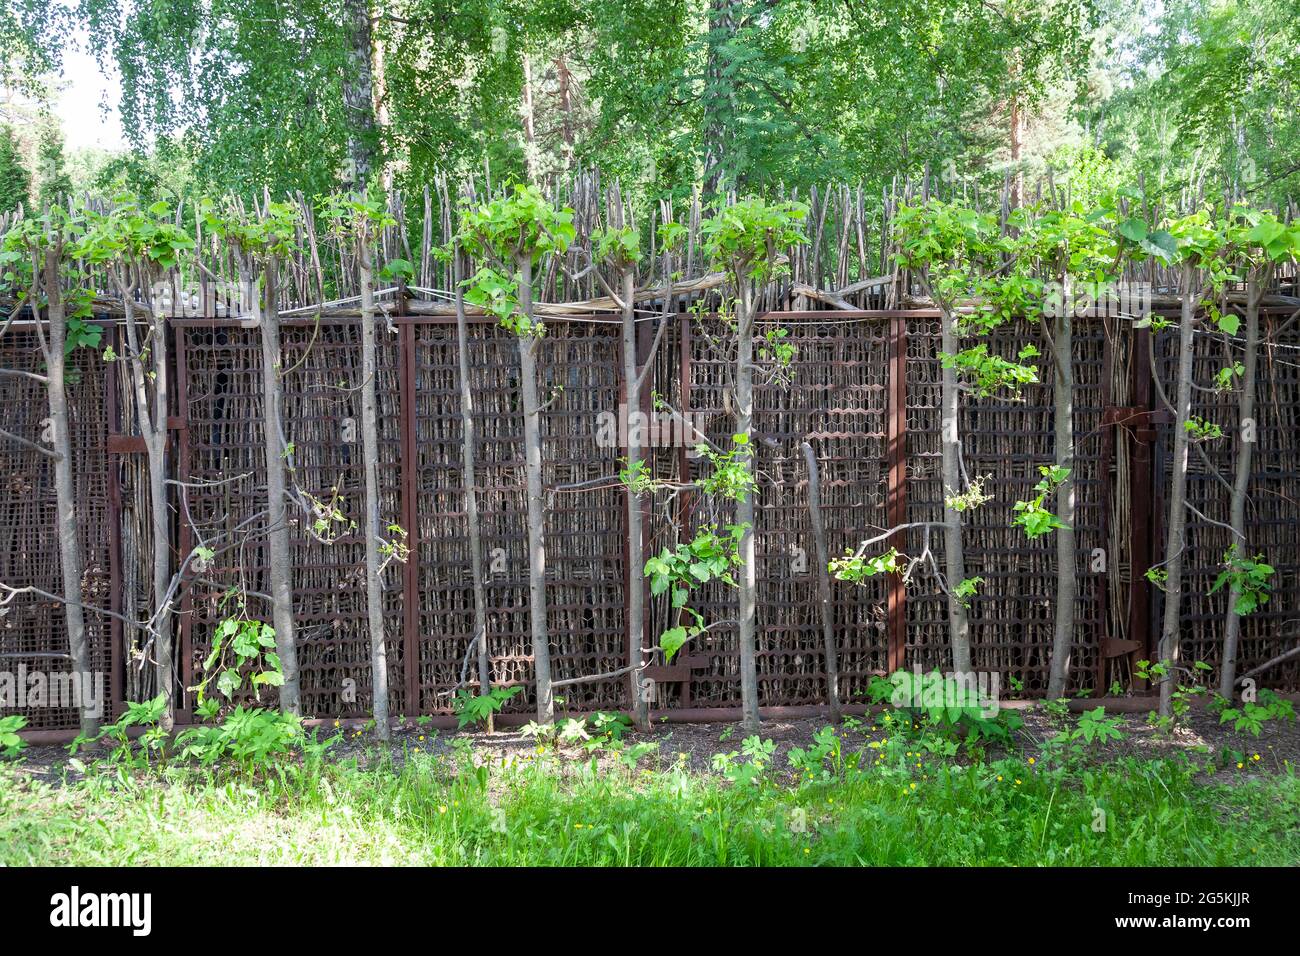 Gewebter Holzzaun EIN Holzzaun, aus Birkenzweigen gewebt, in einem üppigen grünen Wald. Geringe Schärfentiefe. Zaun Weidenbusch Stock Bilder, royalt Stockfoto